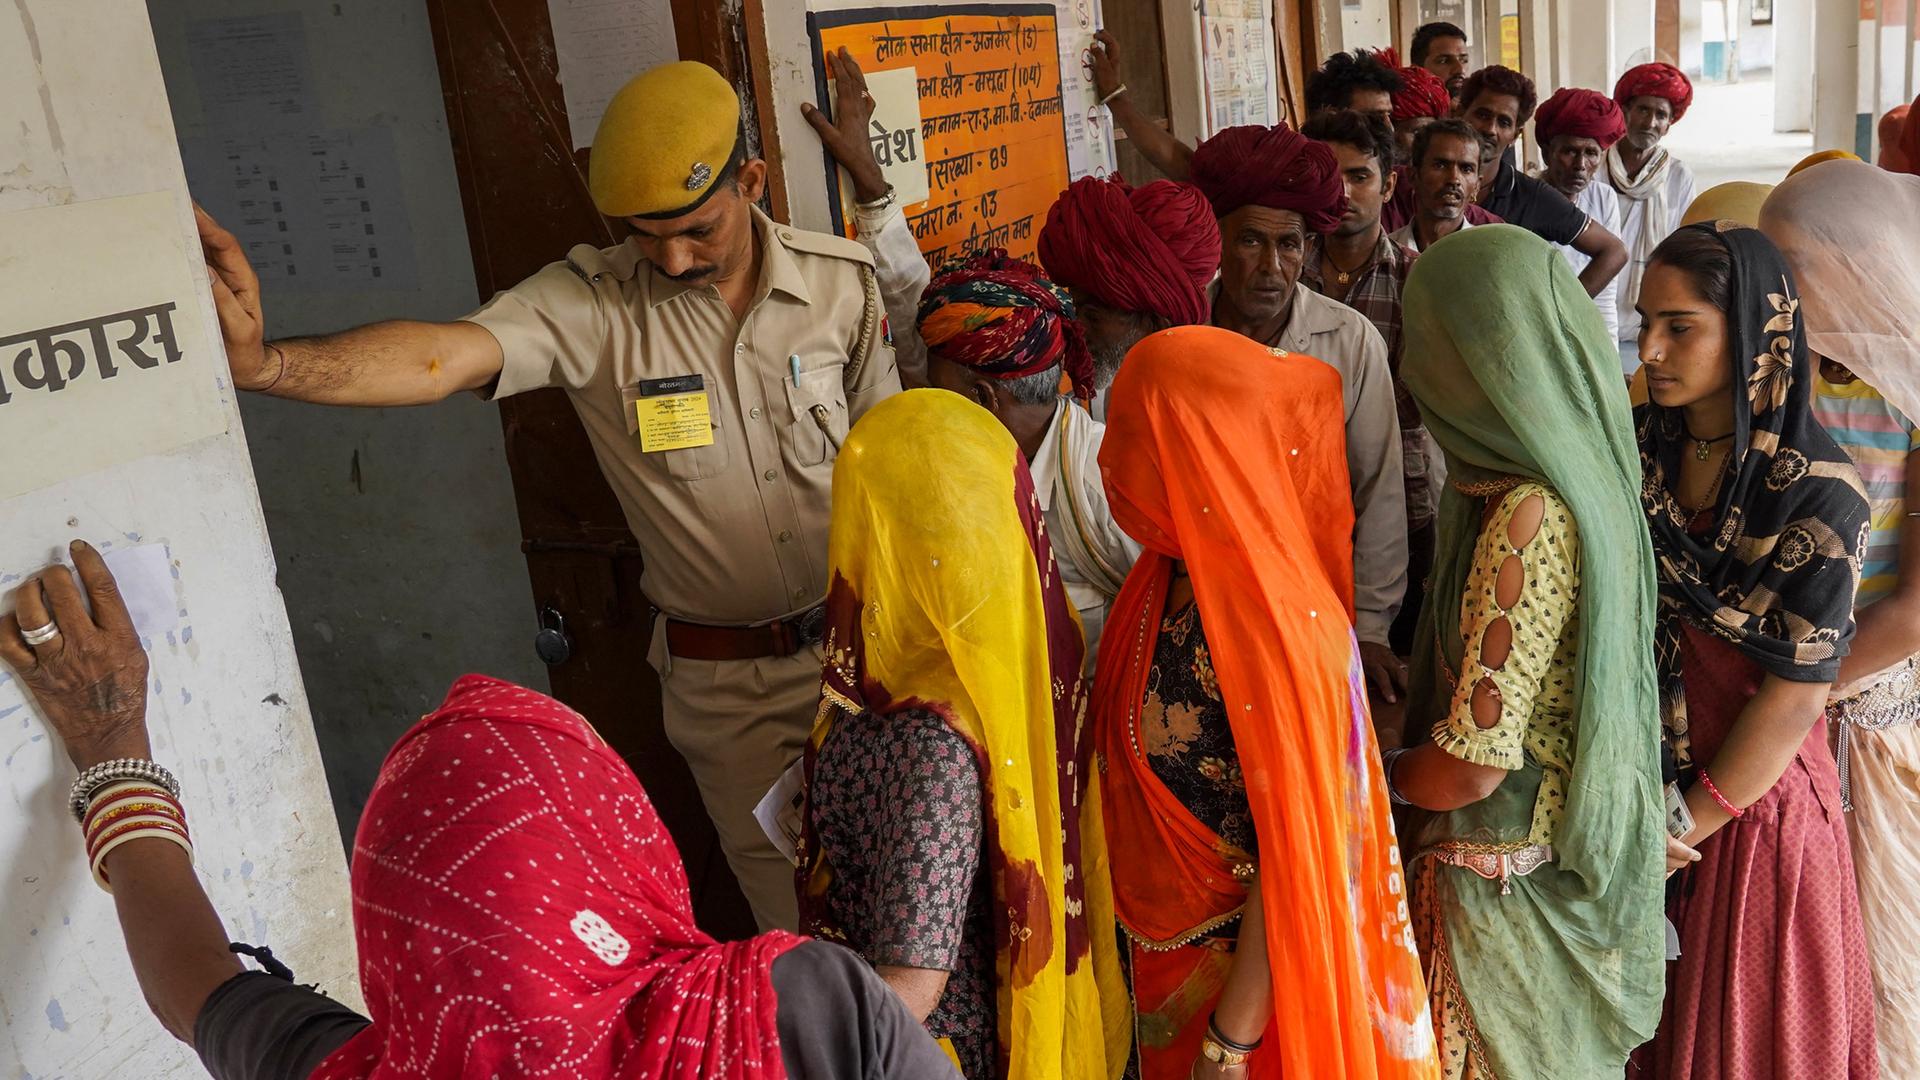 Wähler stehen vor einer Stimmabgabestation in Ajmer in Indien. Ein Beamter hält einen Arm vor die Tür, damit die Leute einzeln eintreten.